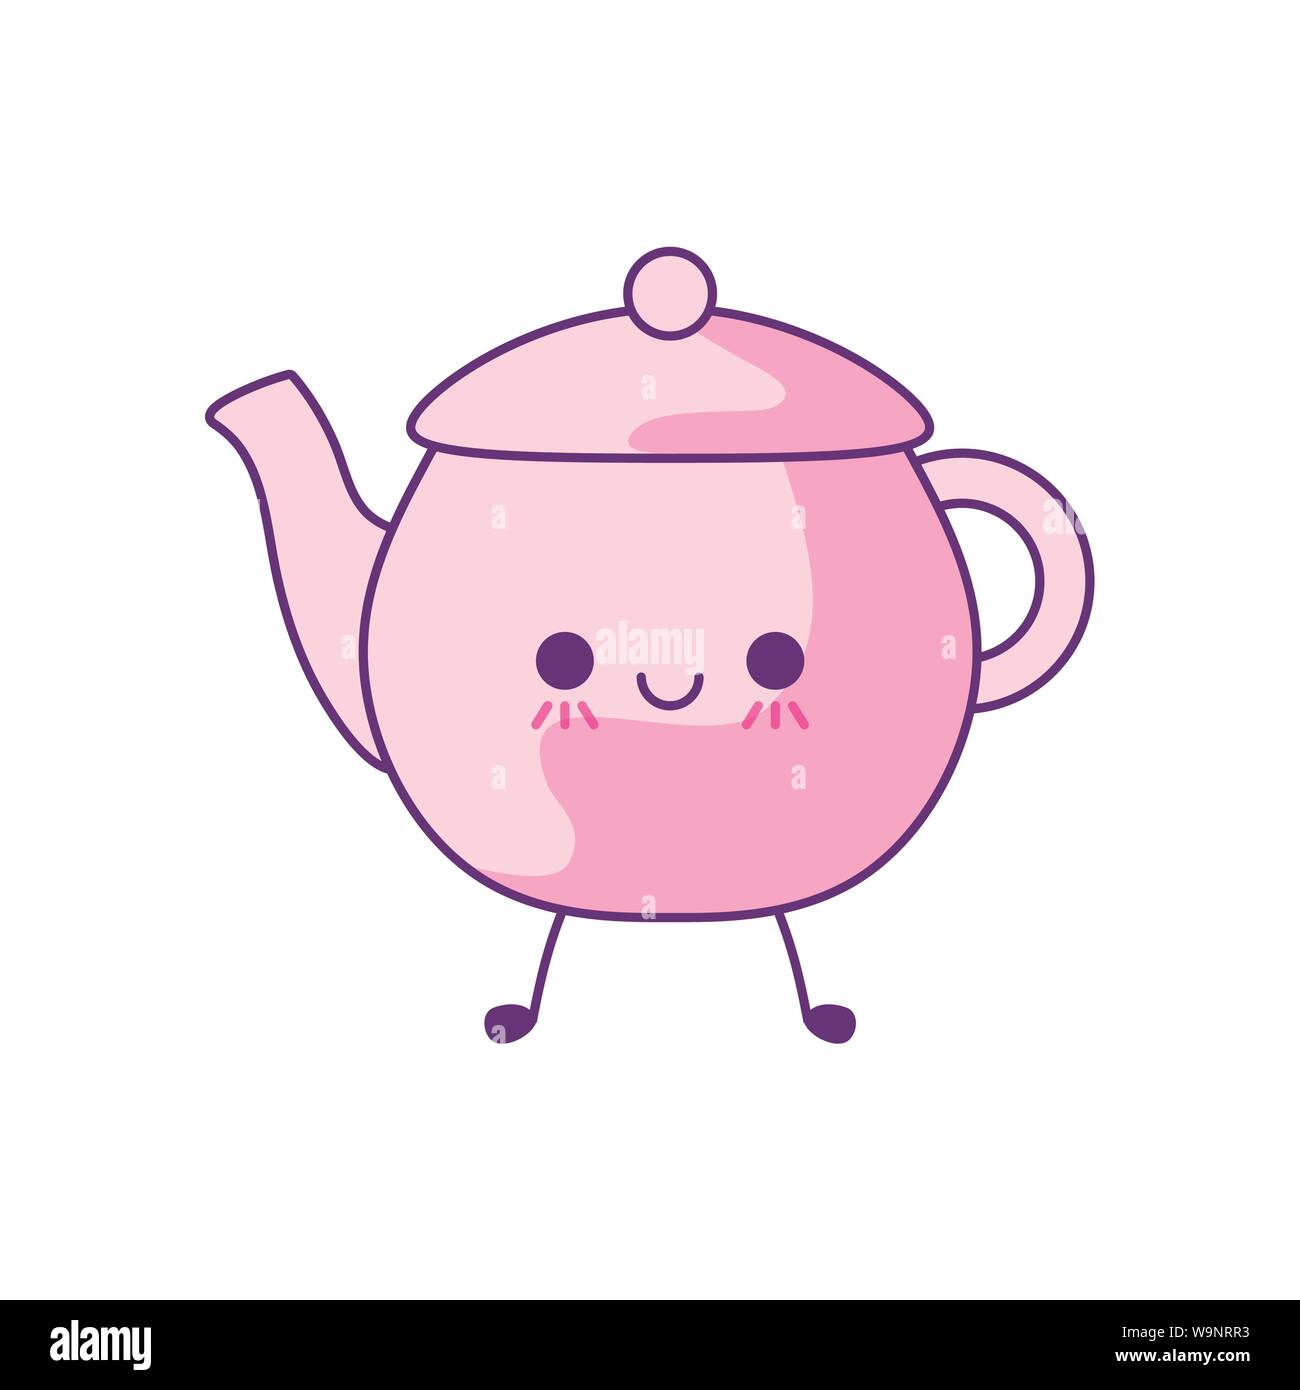 cute teapot kitchen kawaii style vector illustration design Stock Vector  Image & Art - Alamy